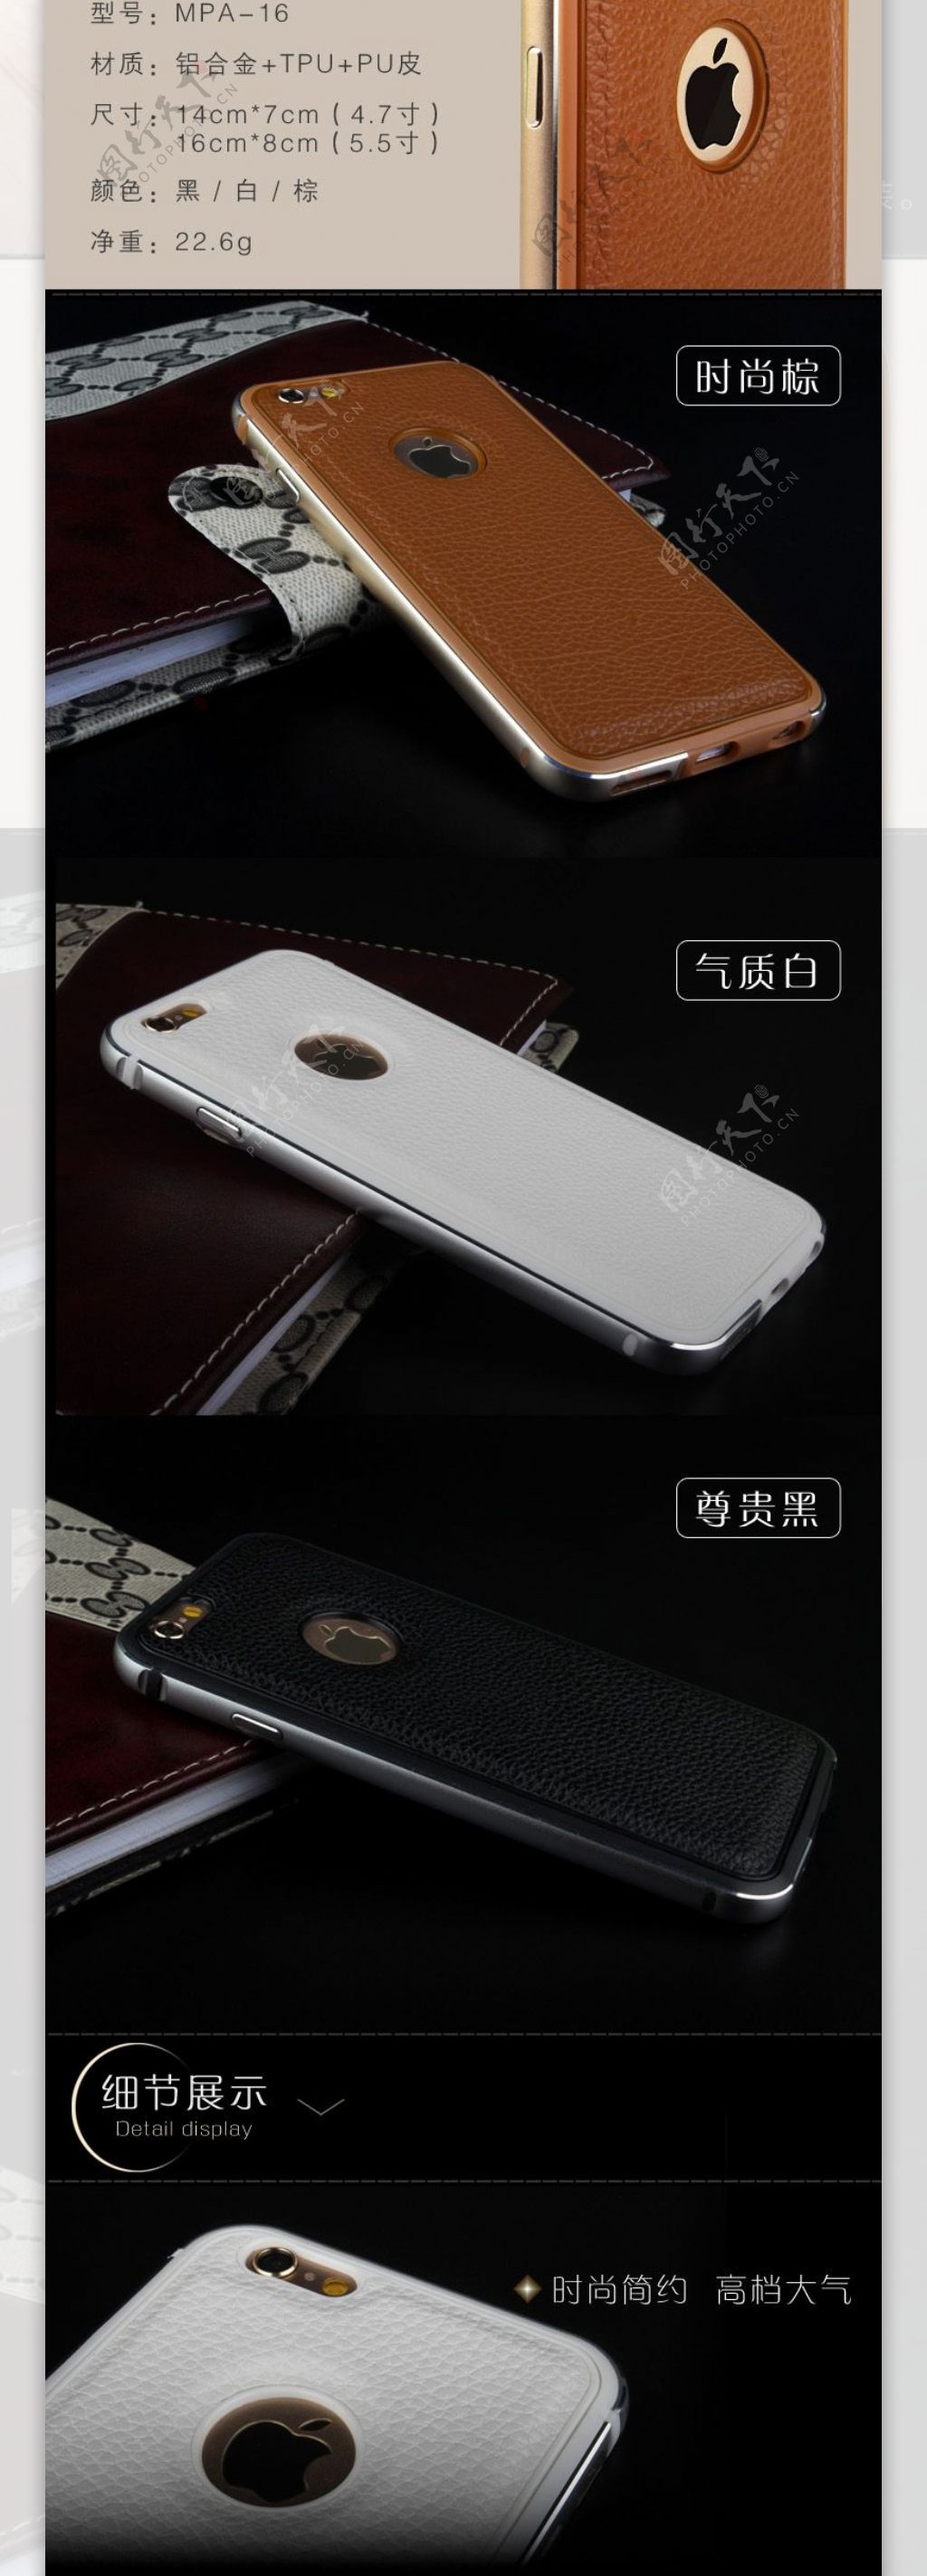 iphone6plus苹果6手机壳详情页